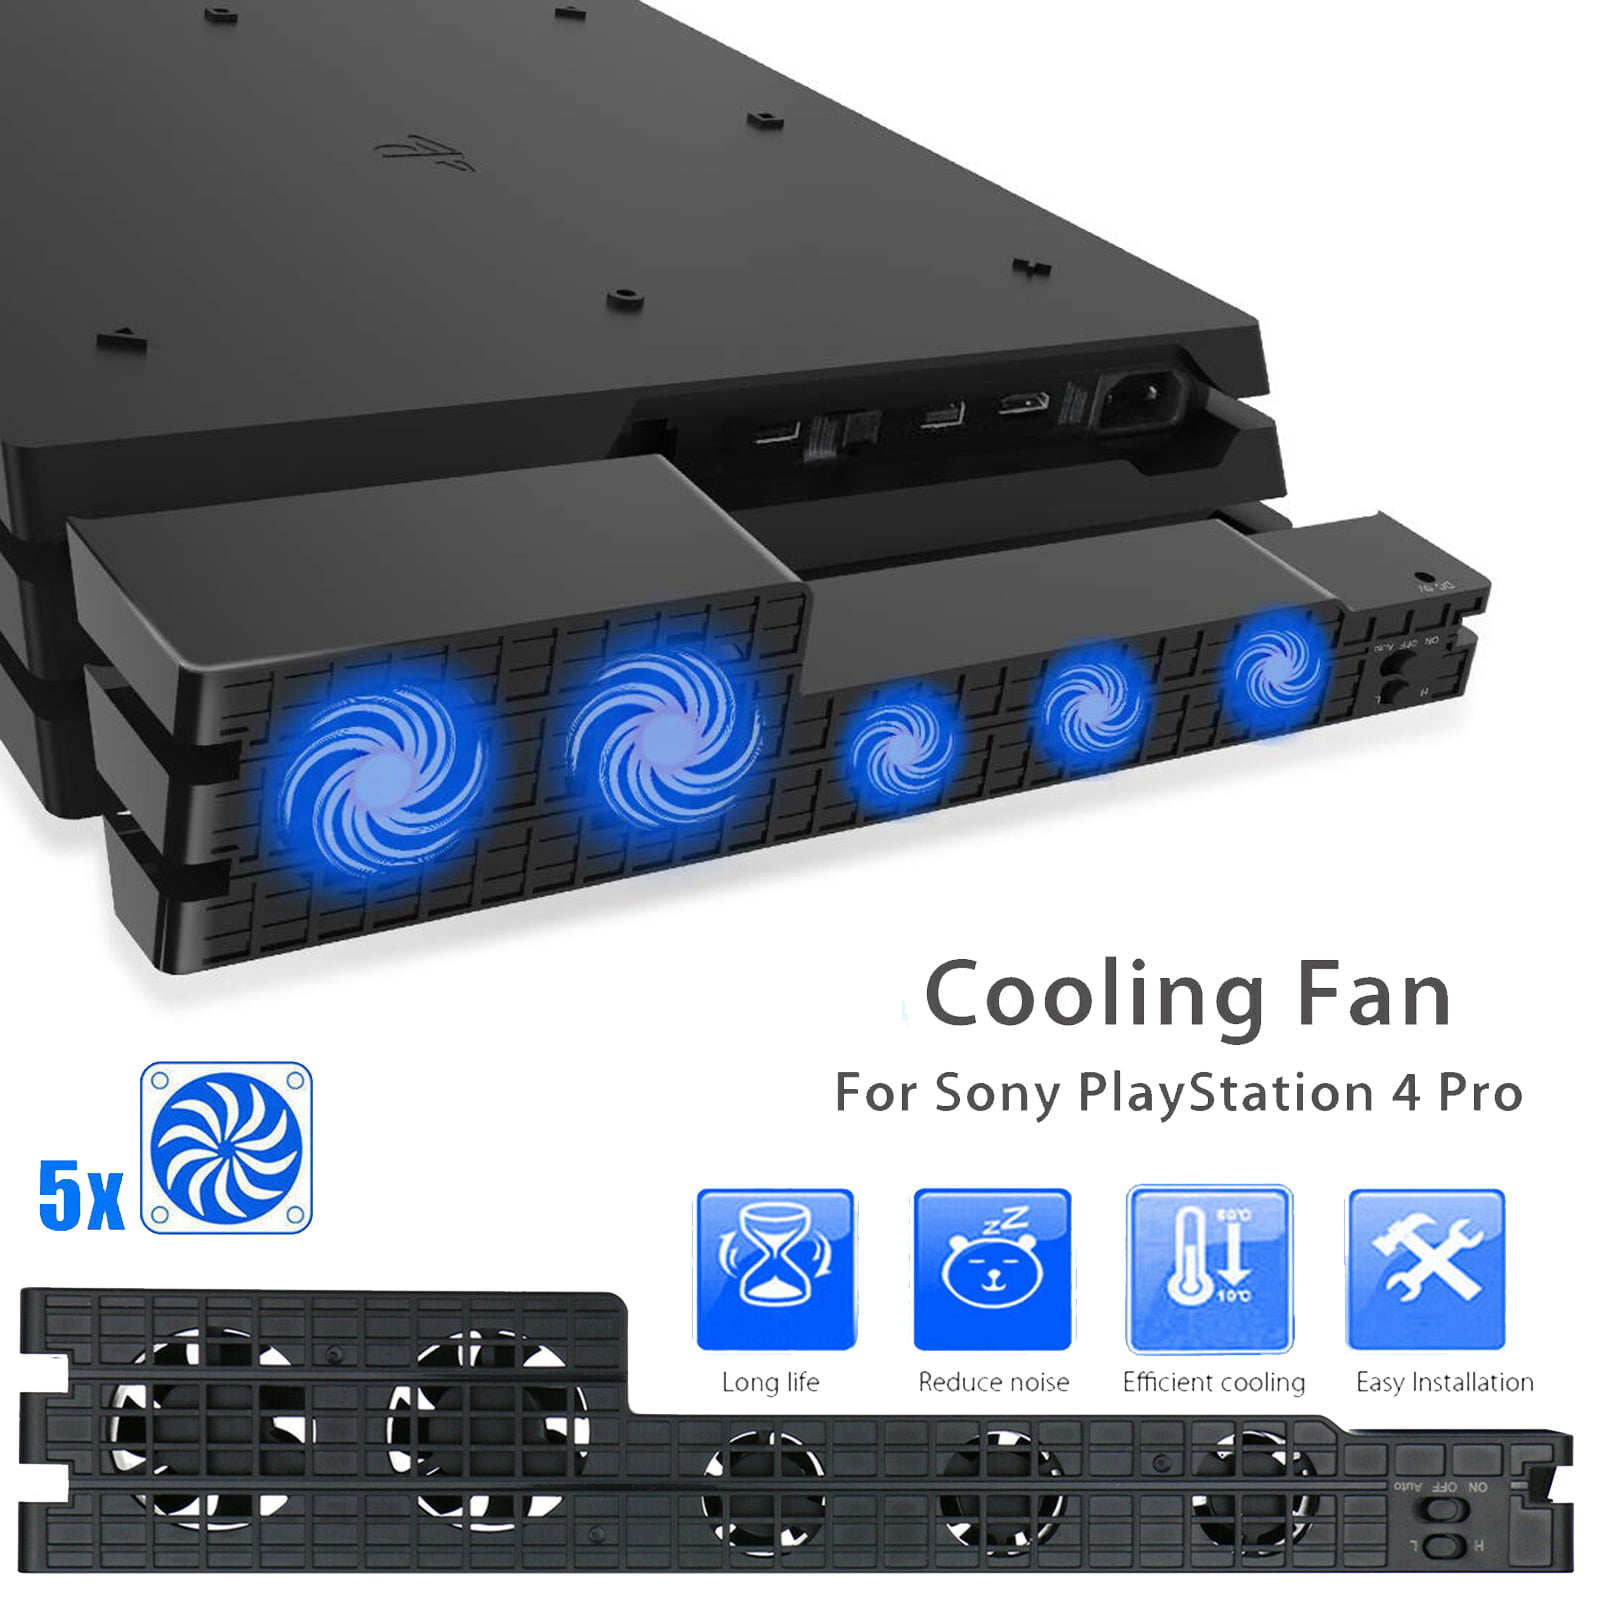 ps4 pro external cooling fan